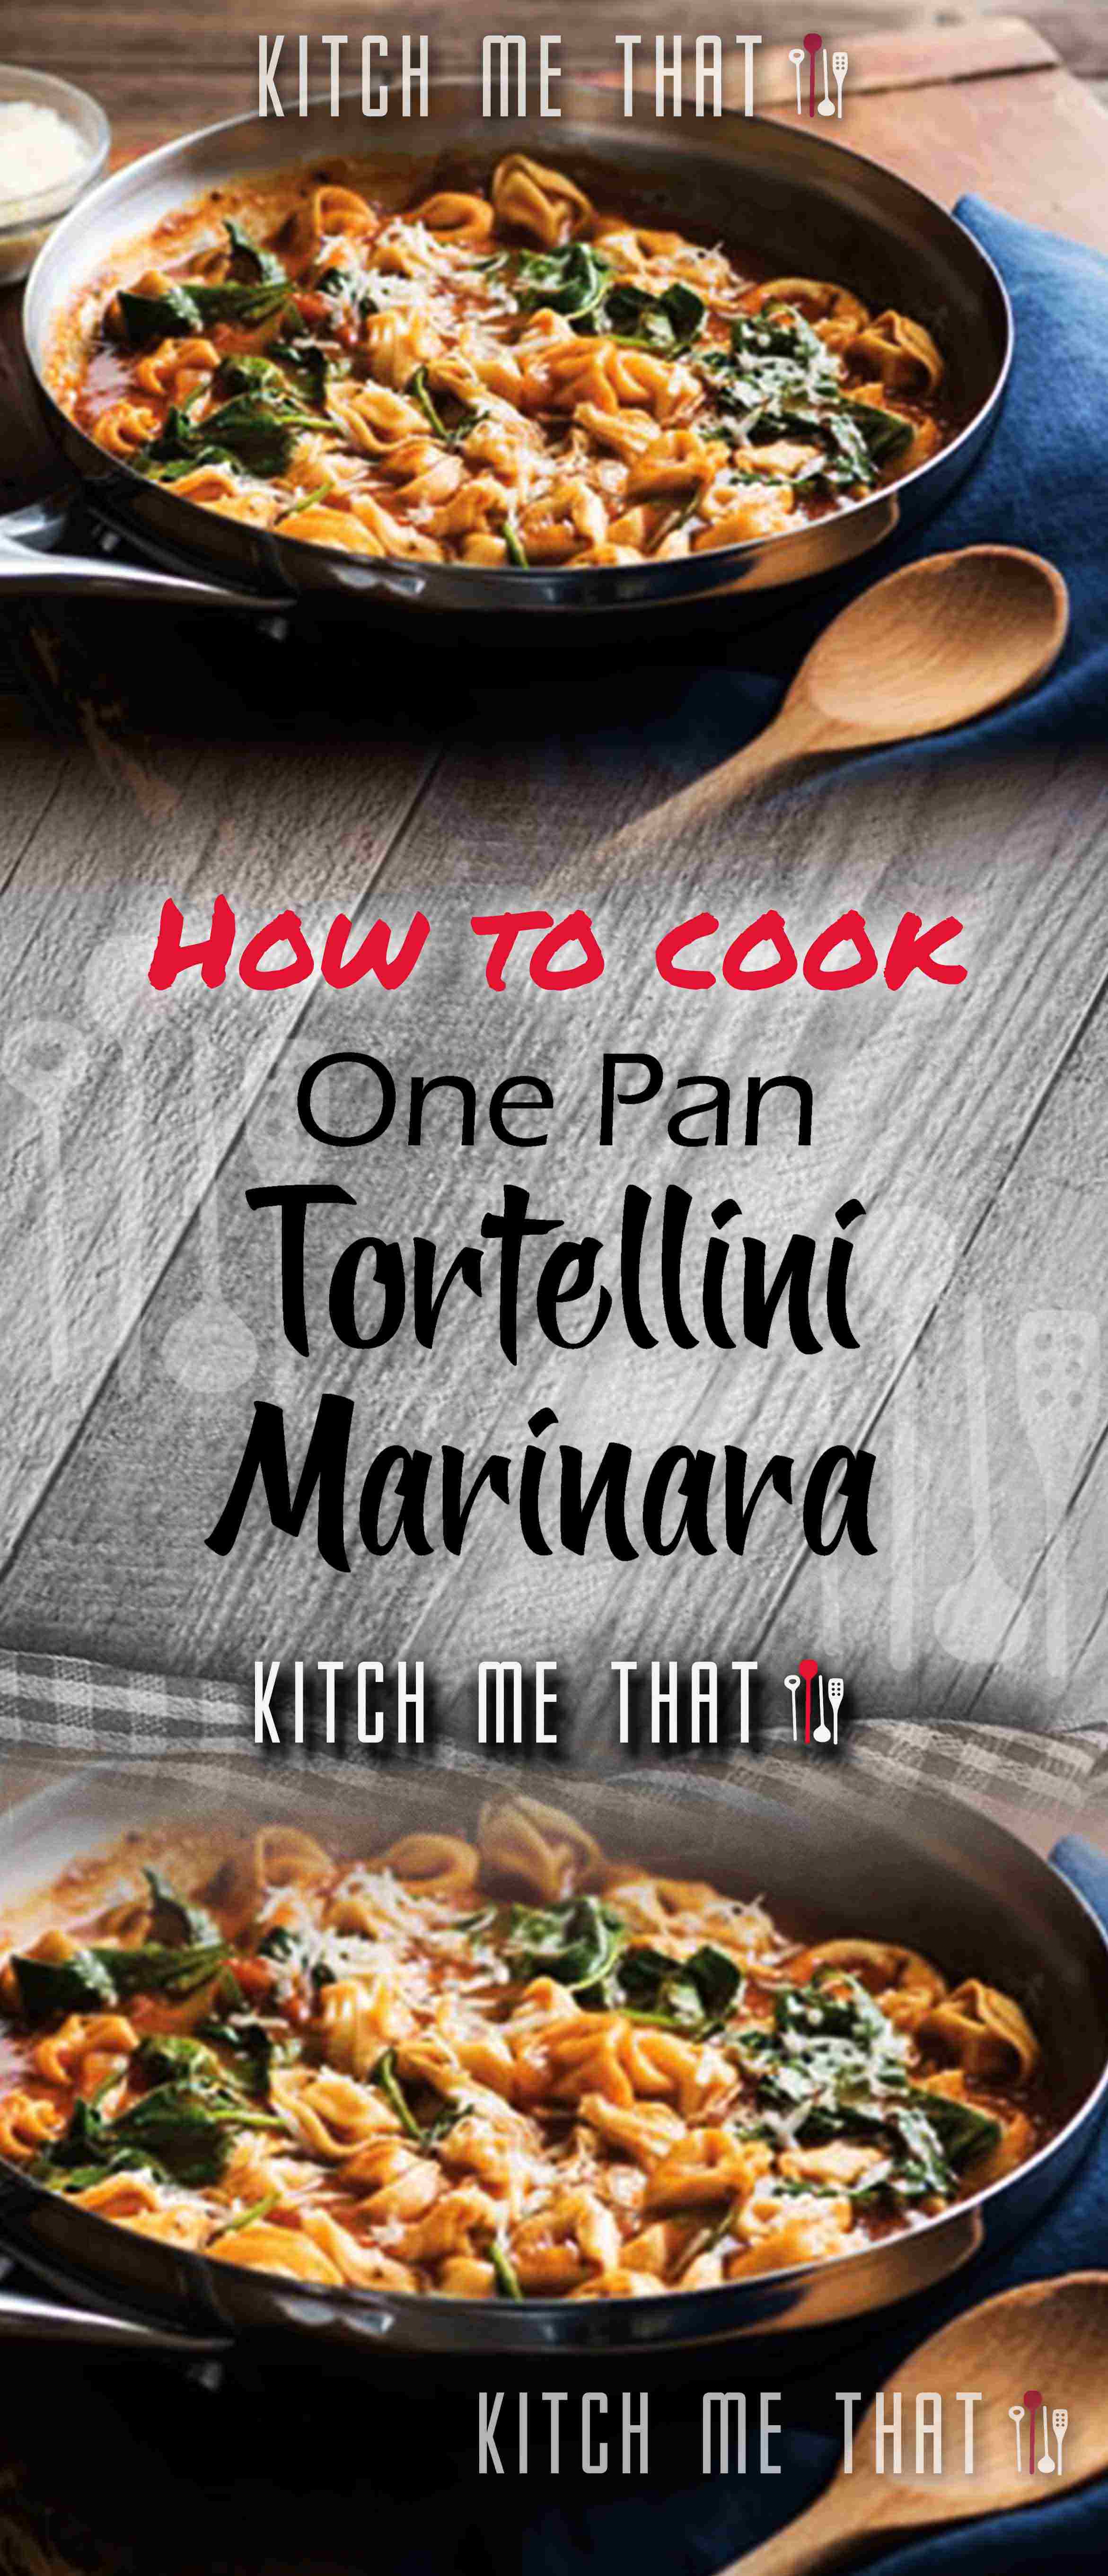 One-Pan Tortellini Marinara